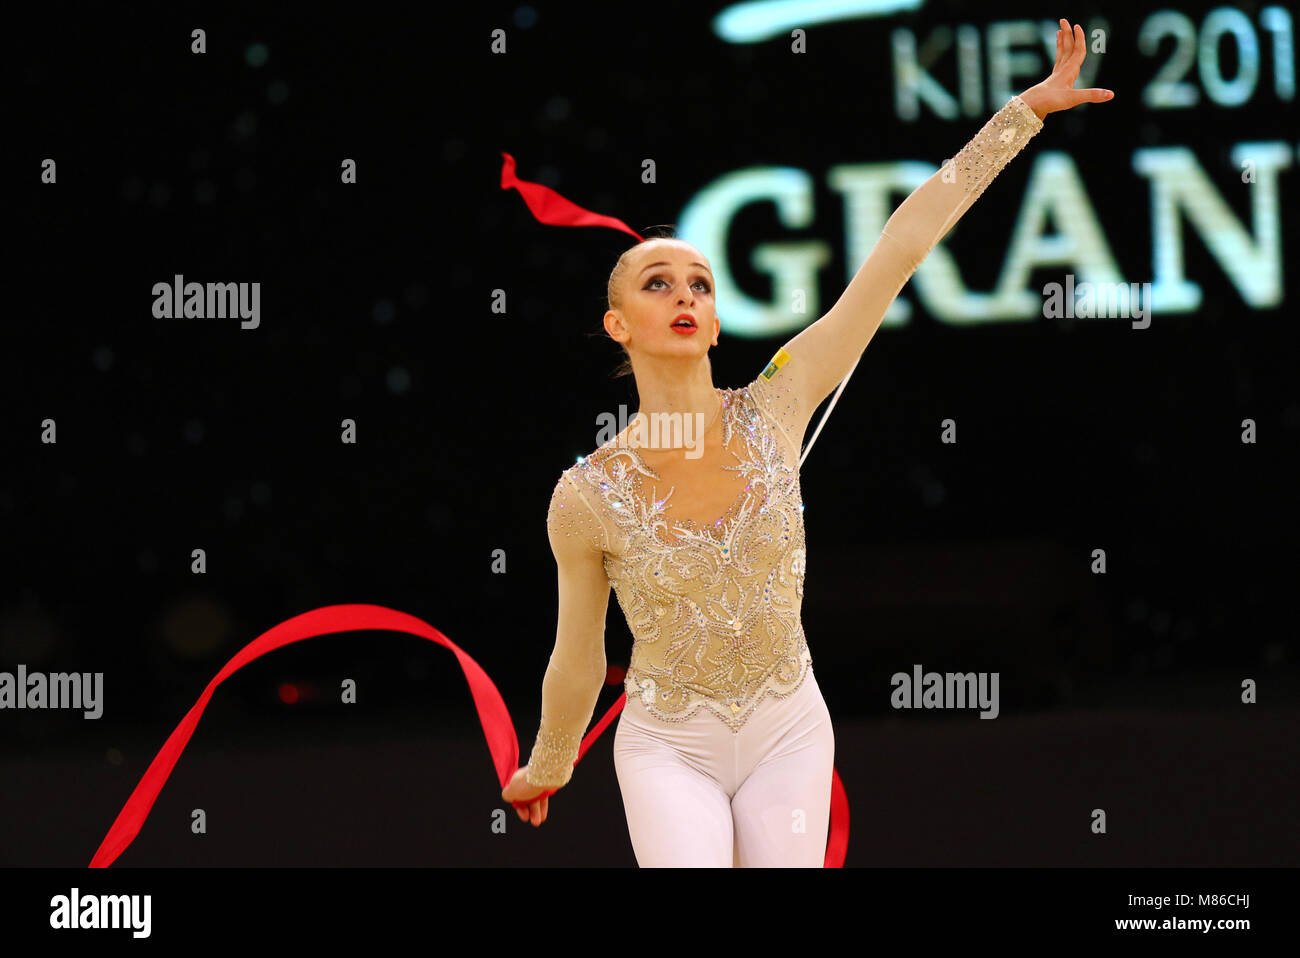 Kiew, Ukraine - 18. MÄRZ 2017: Rhythmische gymnast Olena Diachenko der Ukraine führt mit Band während der Rhythmischen Gymnastik Grand Prix "eriugina Cup' Stockfoto